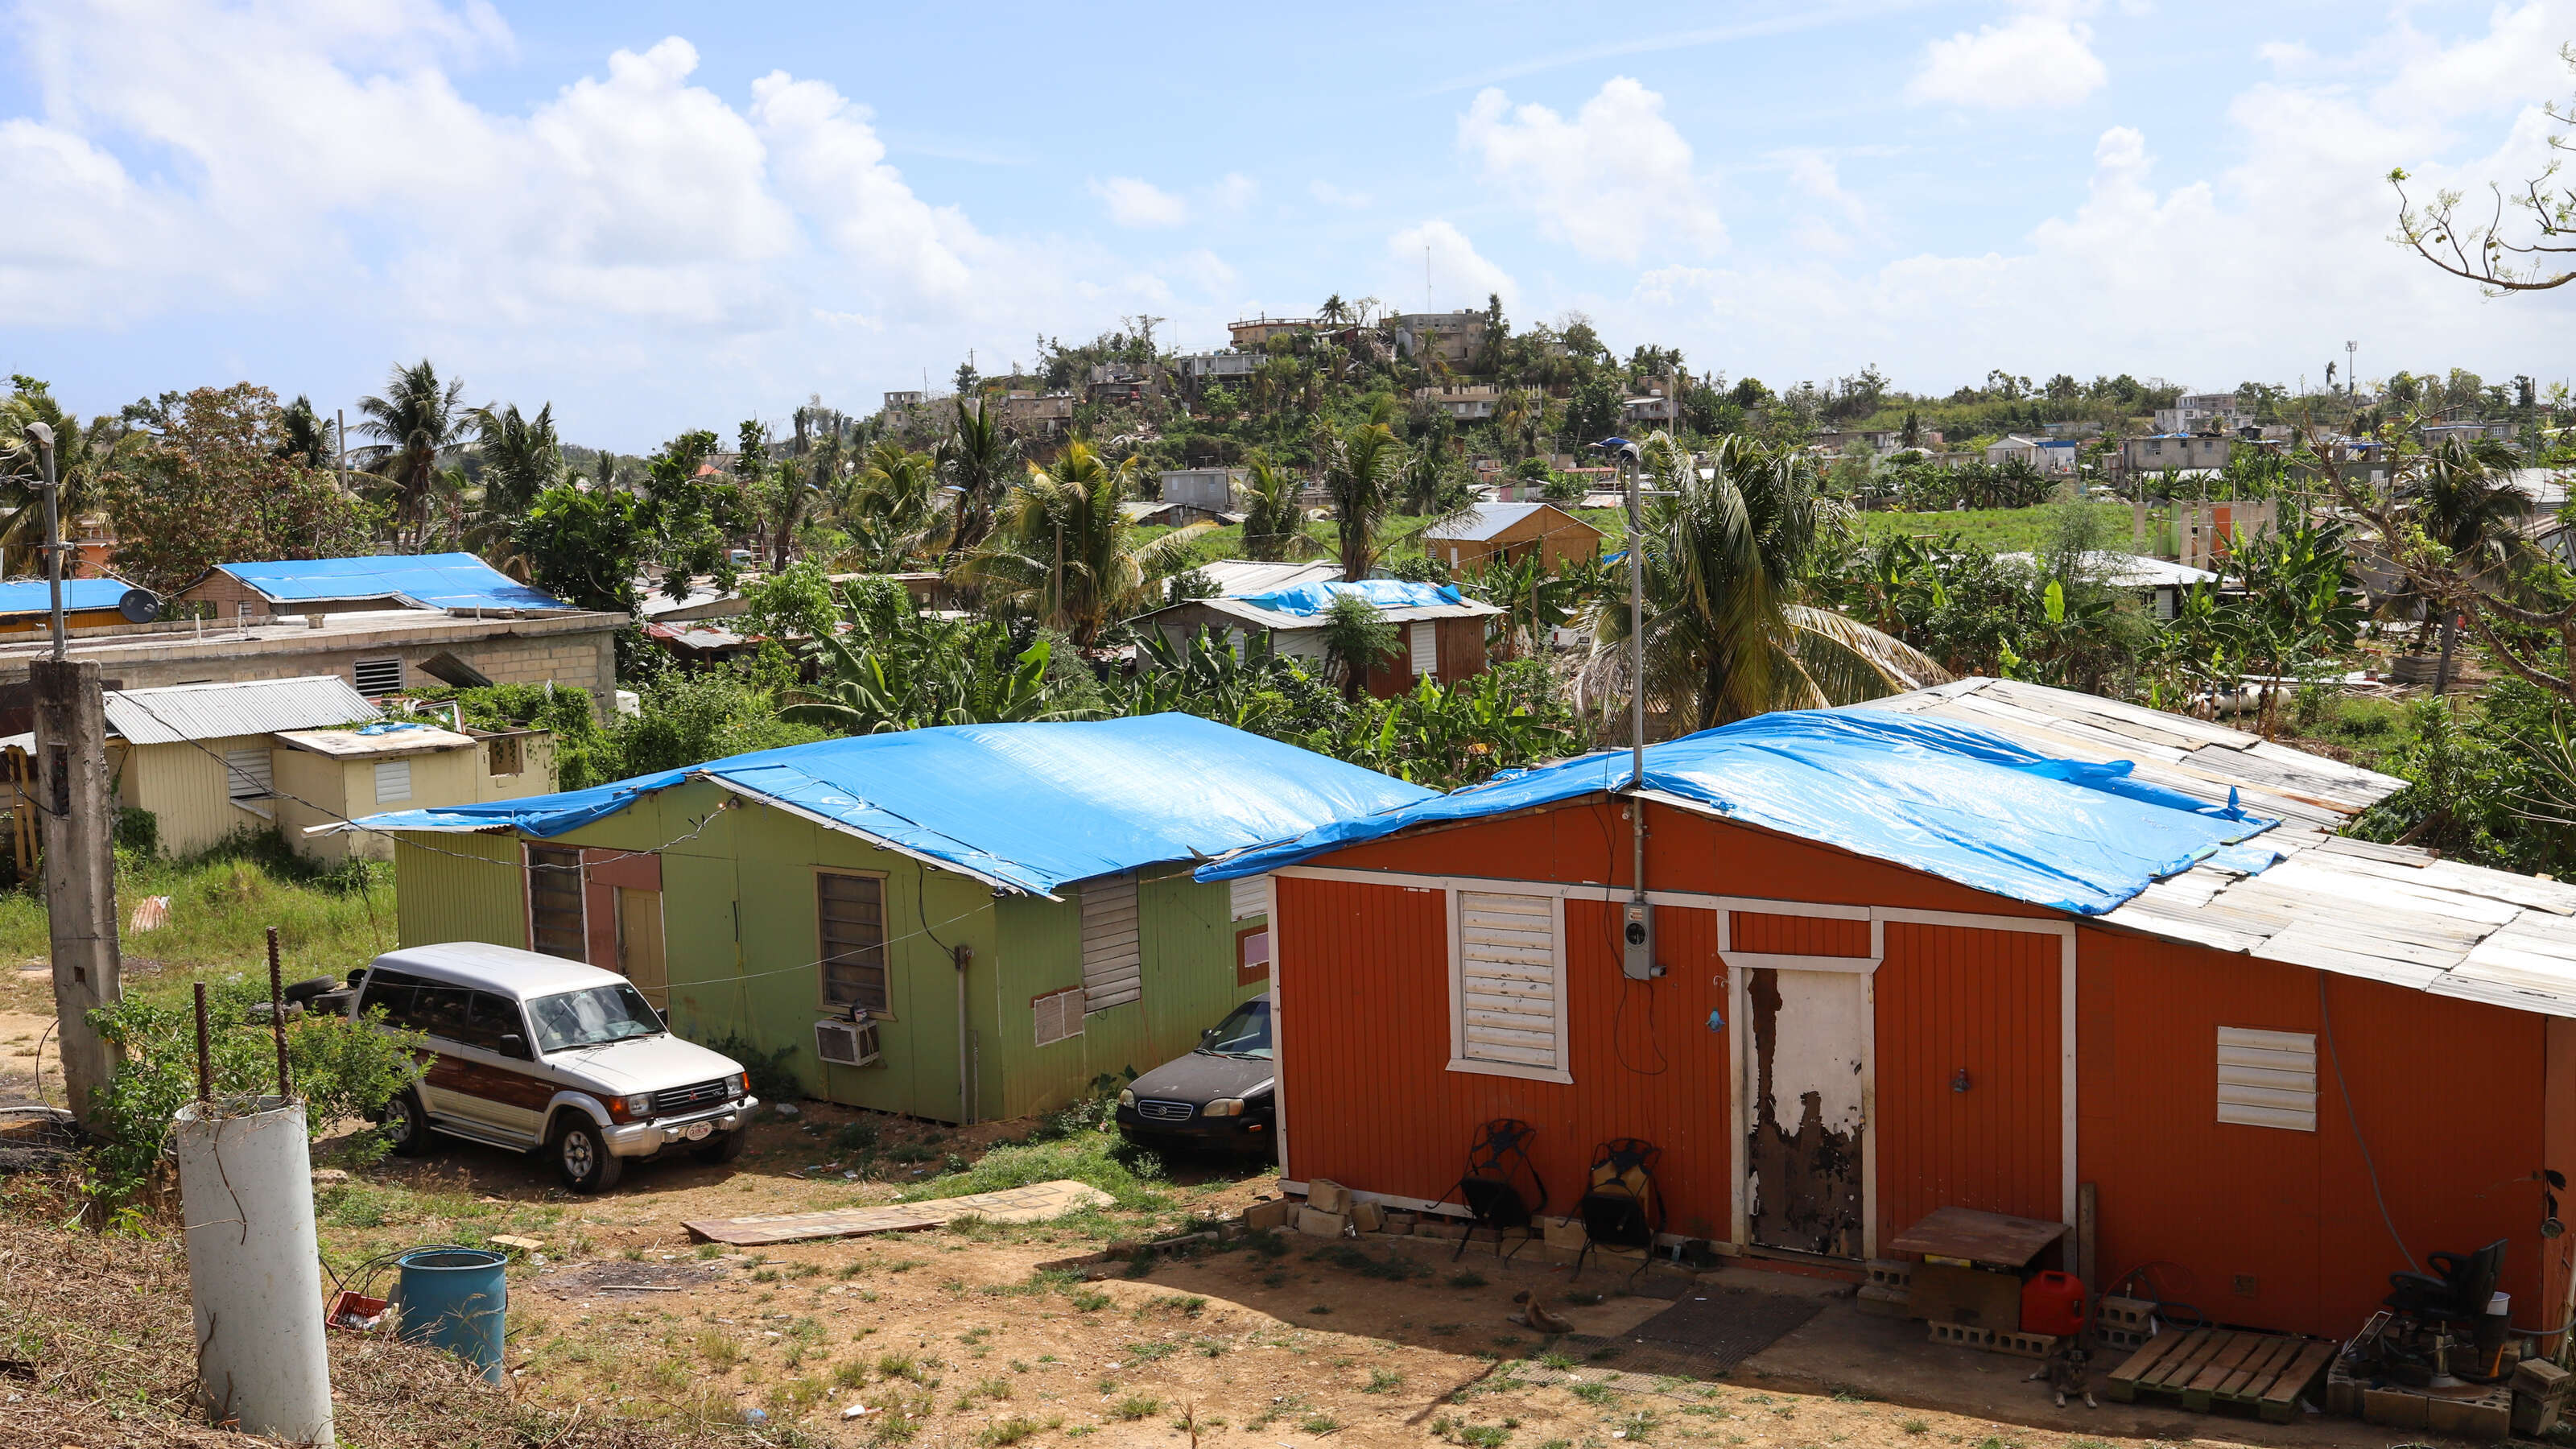 Sobre 3,000 casas permanecen con “techos azules” acepta Vivienda – NotiCel  – La verdad como es – Noticias de Puerto Rico – NOTICEL